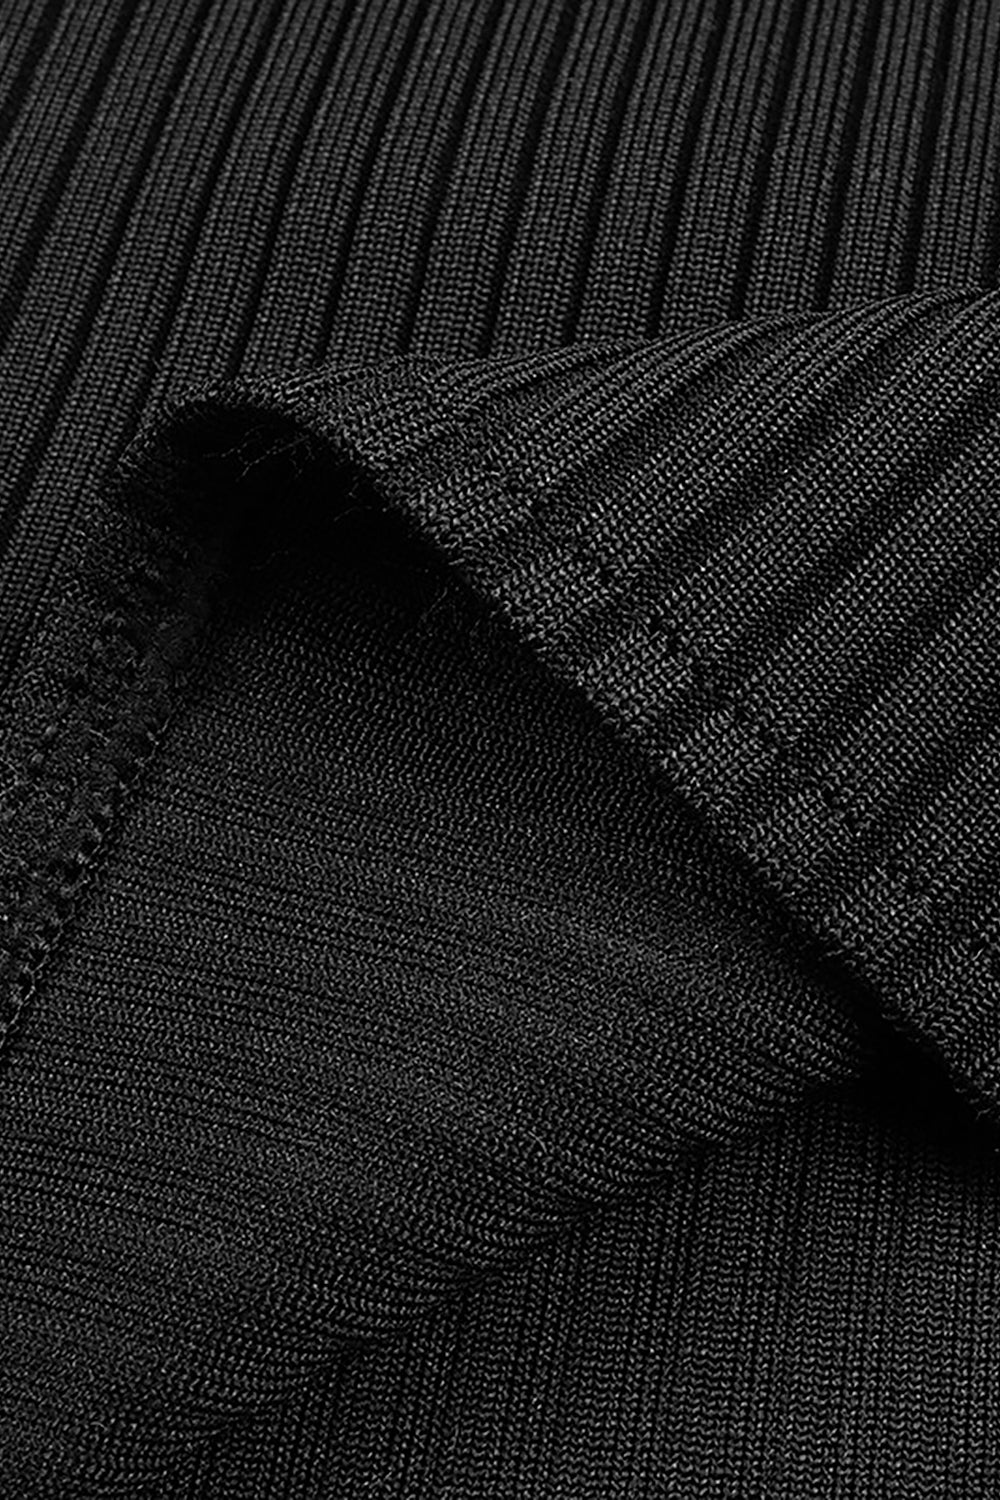 Robe noire à bandes en patchwork de maille à manches longues et col rond